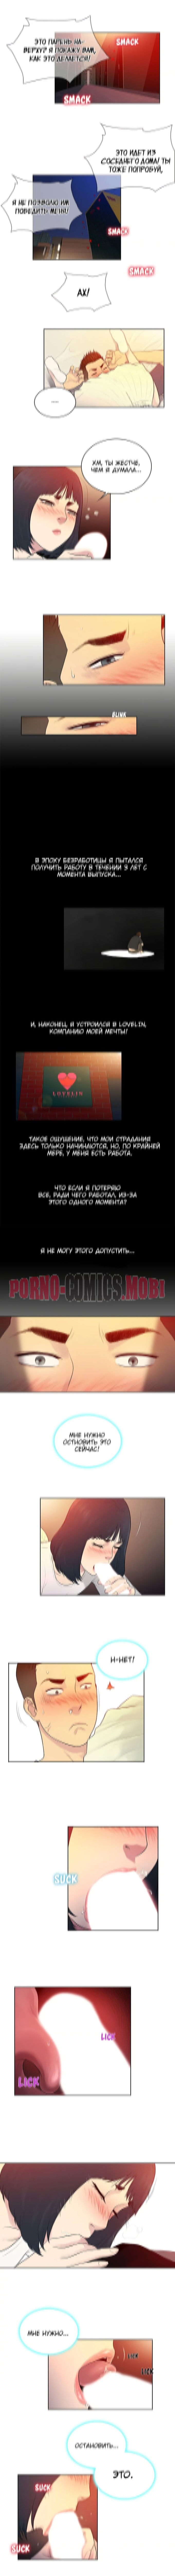 Порно Комикс Стойкий парень Часть 6 смотреть бесплатно онлайн